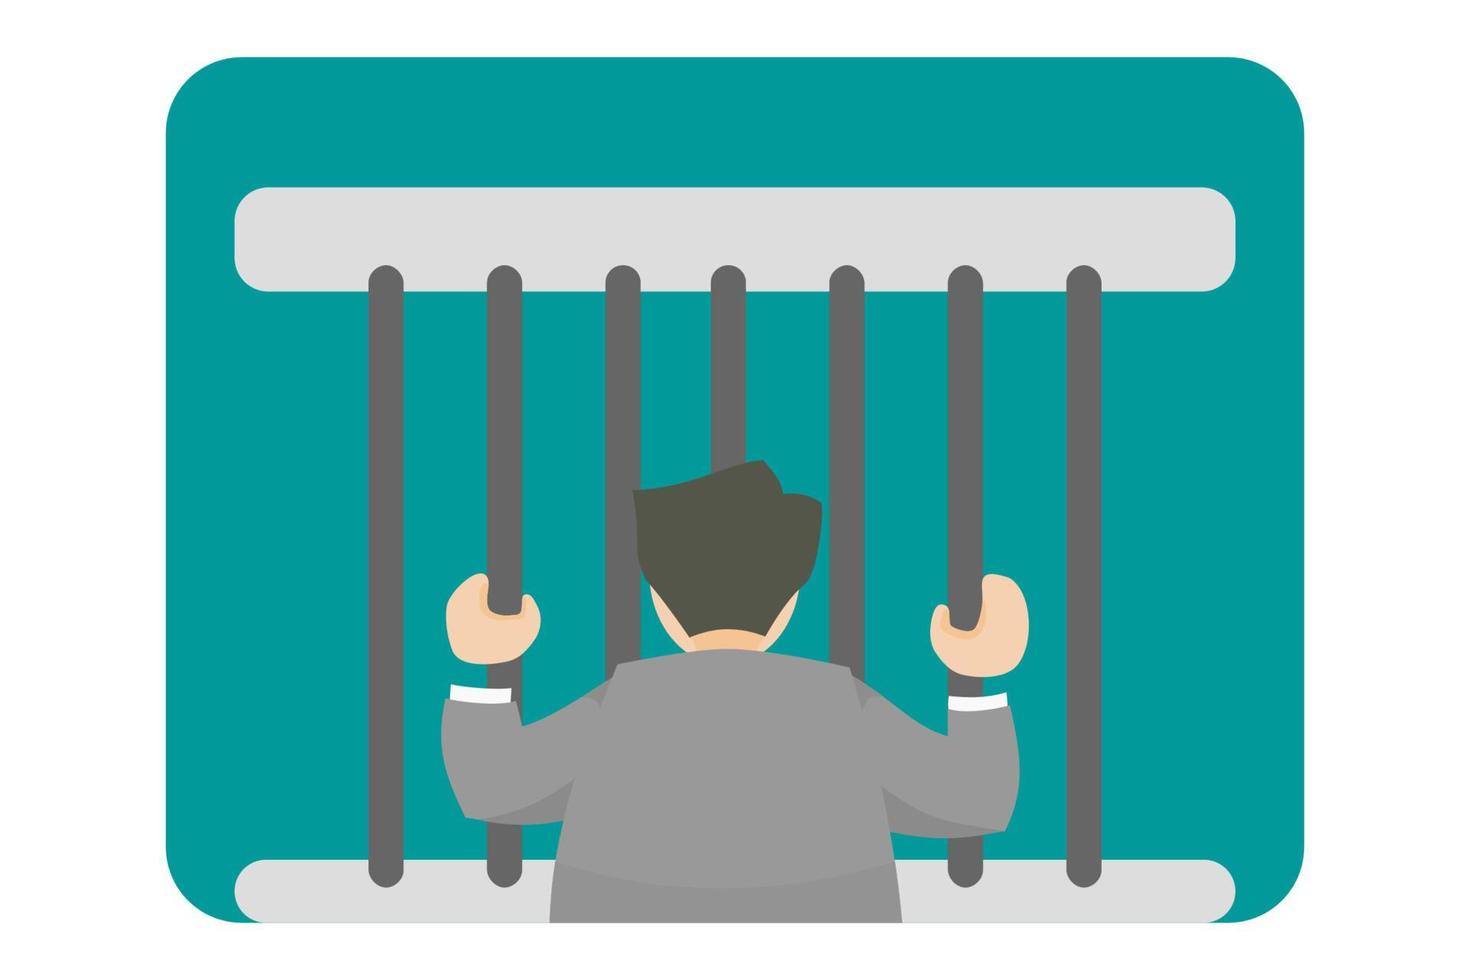 ilustración de funcionarios del gobierno que cometen actos delictivos, corrupción o violan la ley por las acciones realizadas y son recompensados como prisioneros, o también pueden ser saboteados funcionarios en celdas. vector